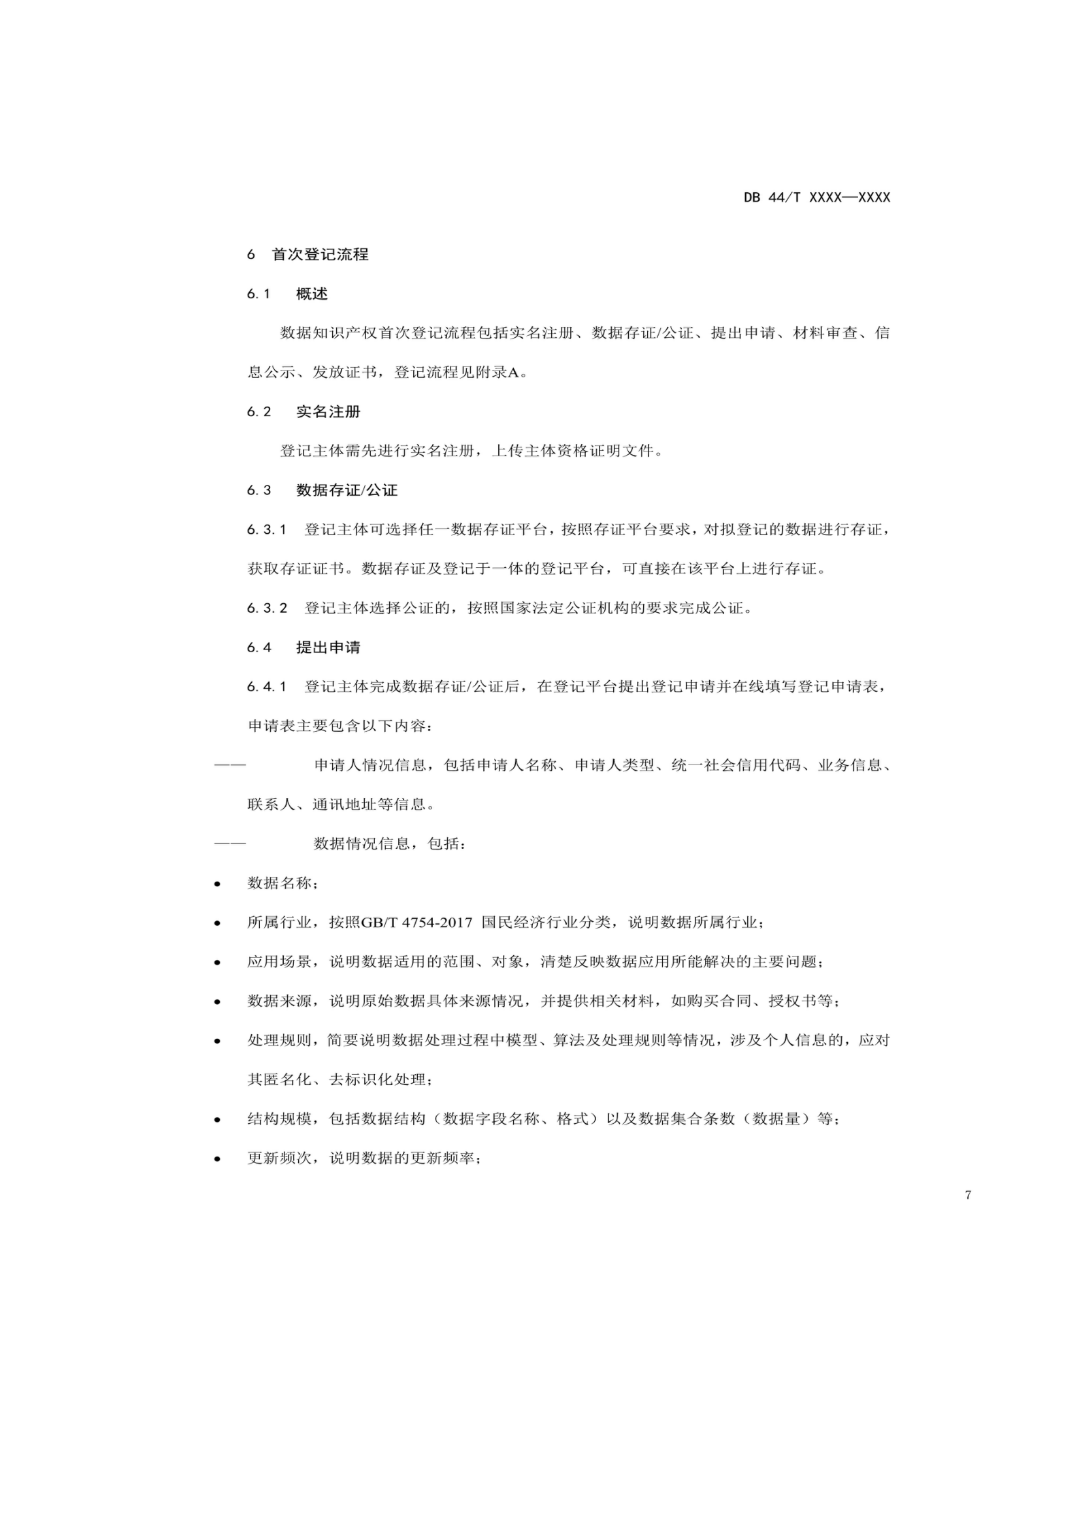 7月18日截止！广东省地方标准《数据知识产权登记指南（送审稿）》征求意见